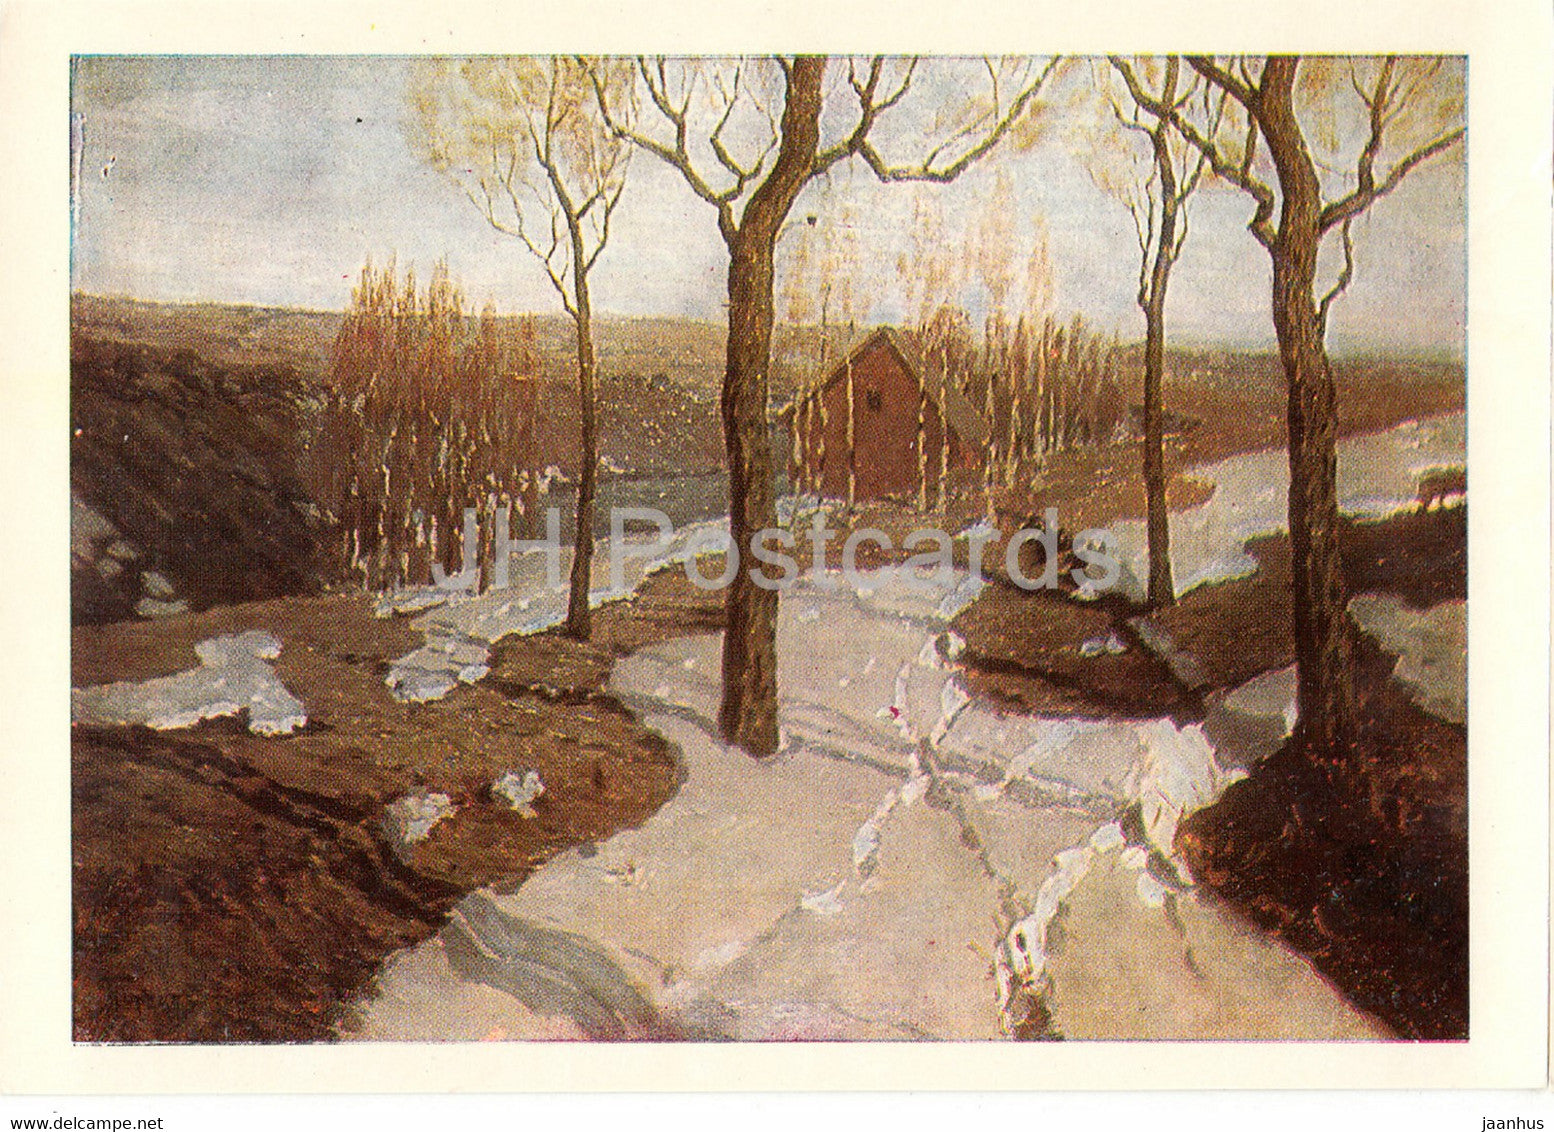 painting by Vilhelms Purvitis - Springtime Landscape - Latvian art - Latvia USSR - unused - JH Postcards